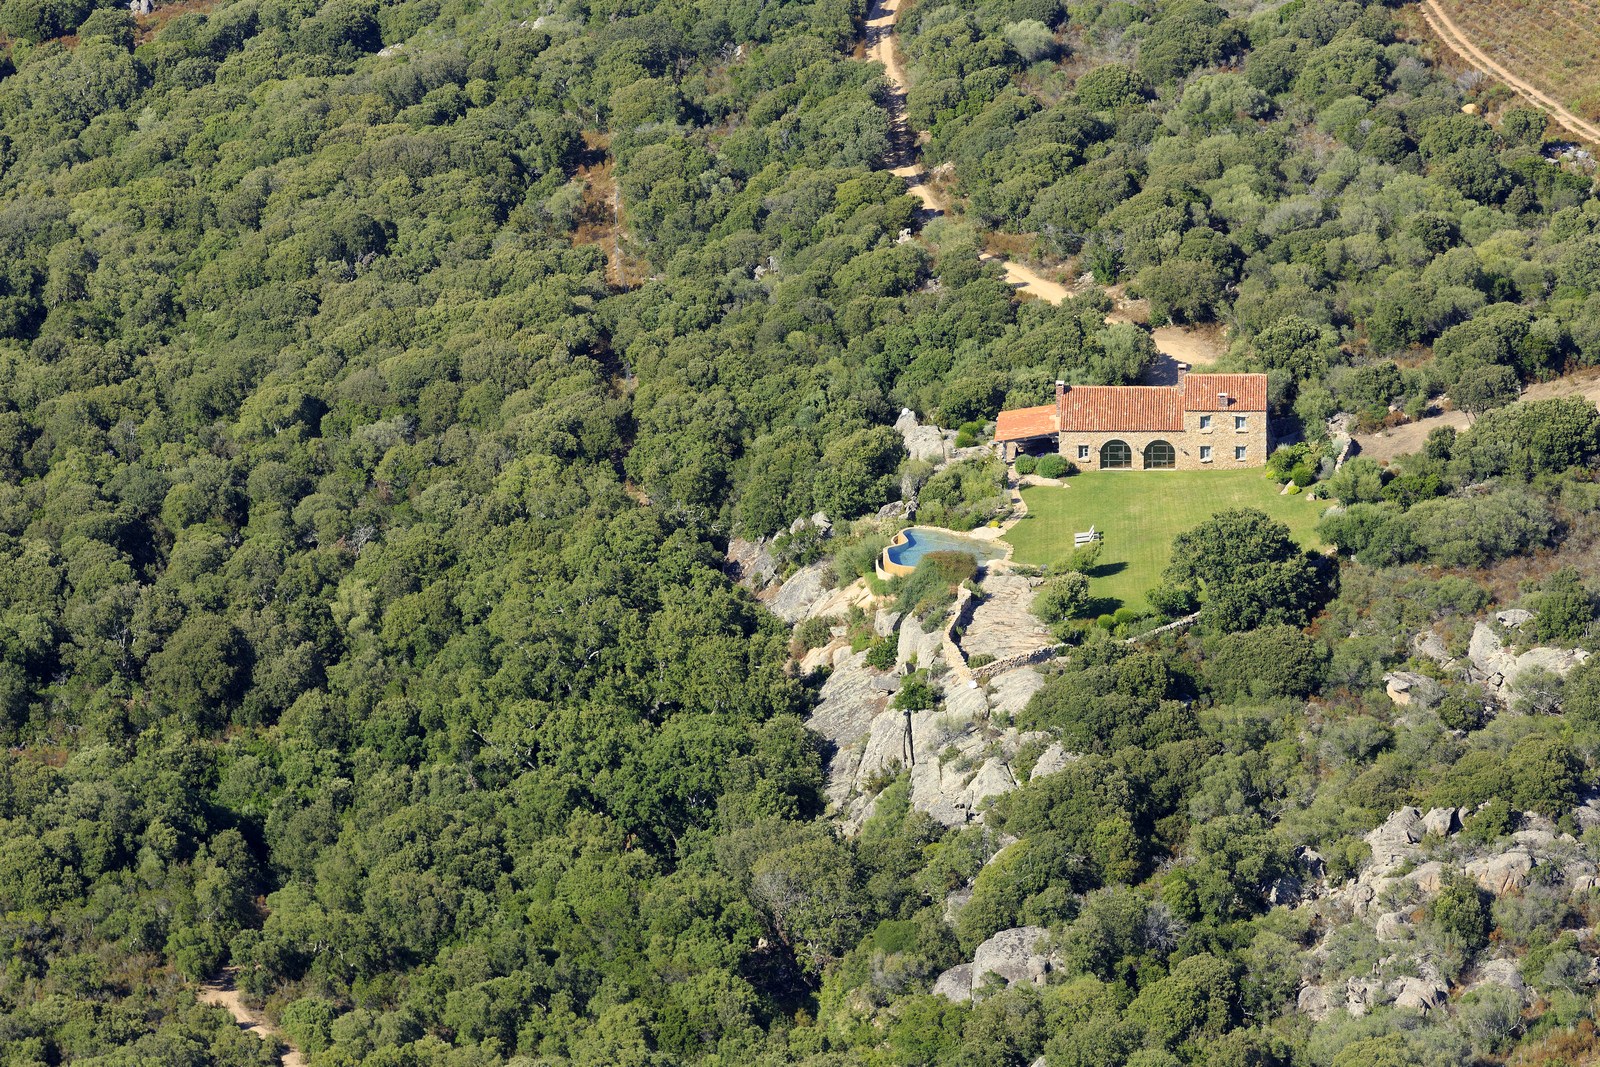 Aerial of U Fragnu, Corsica